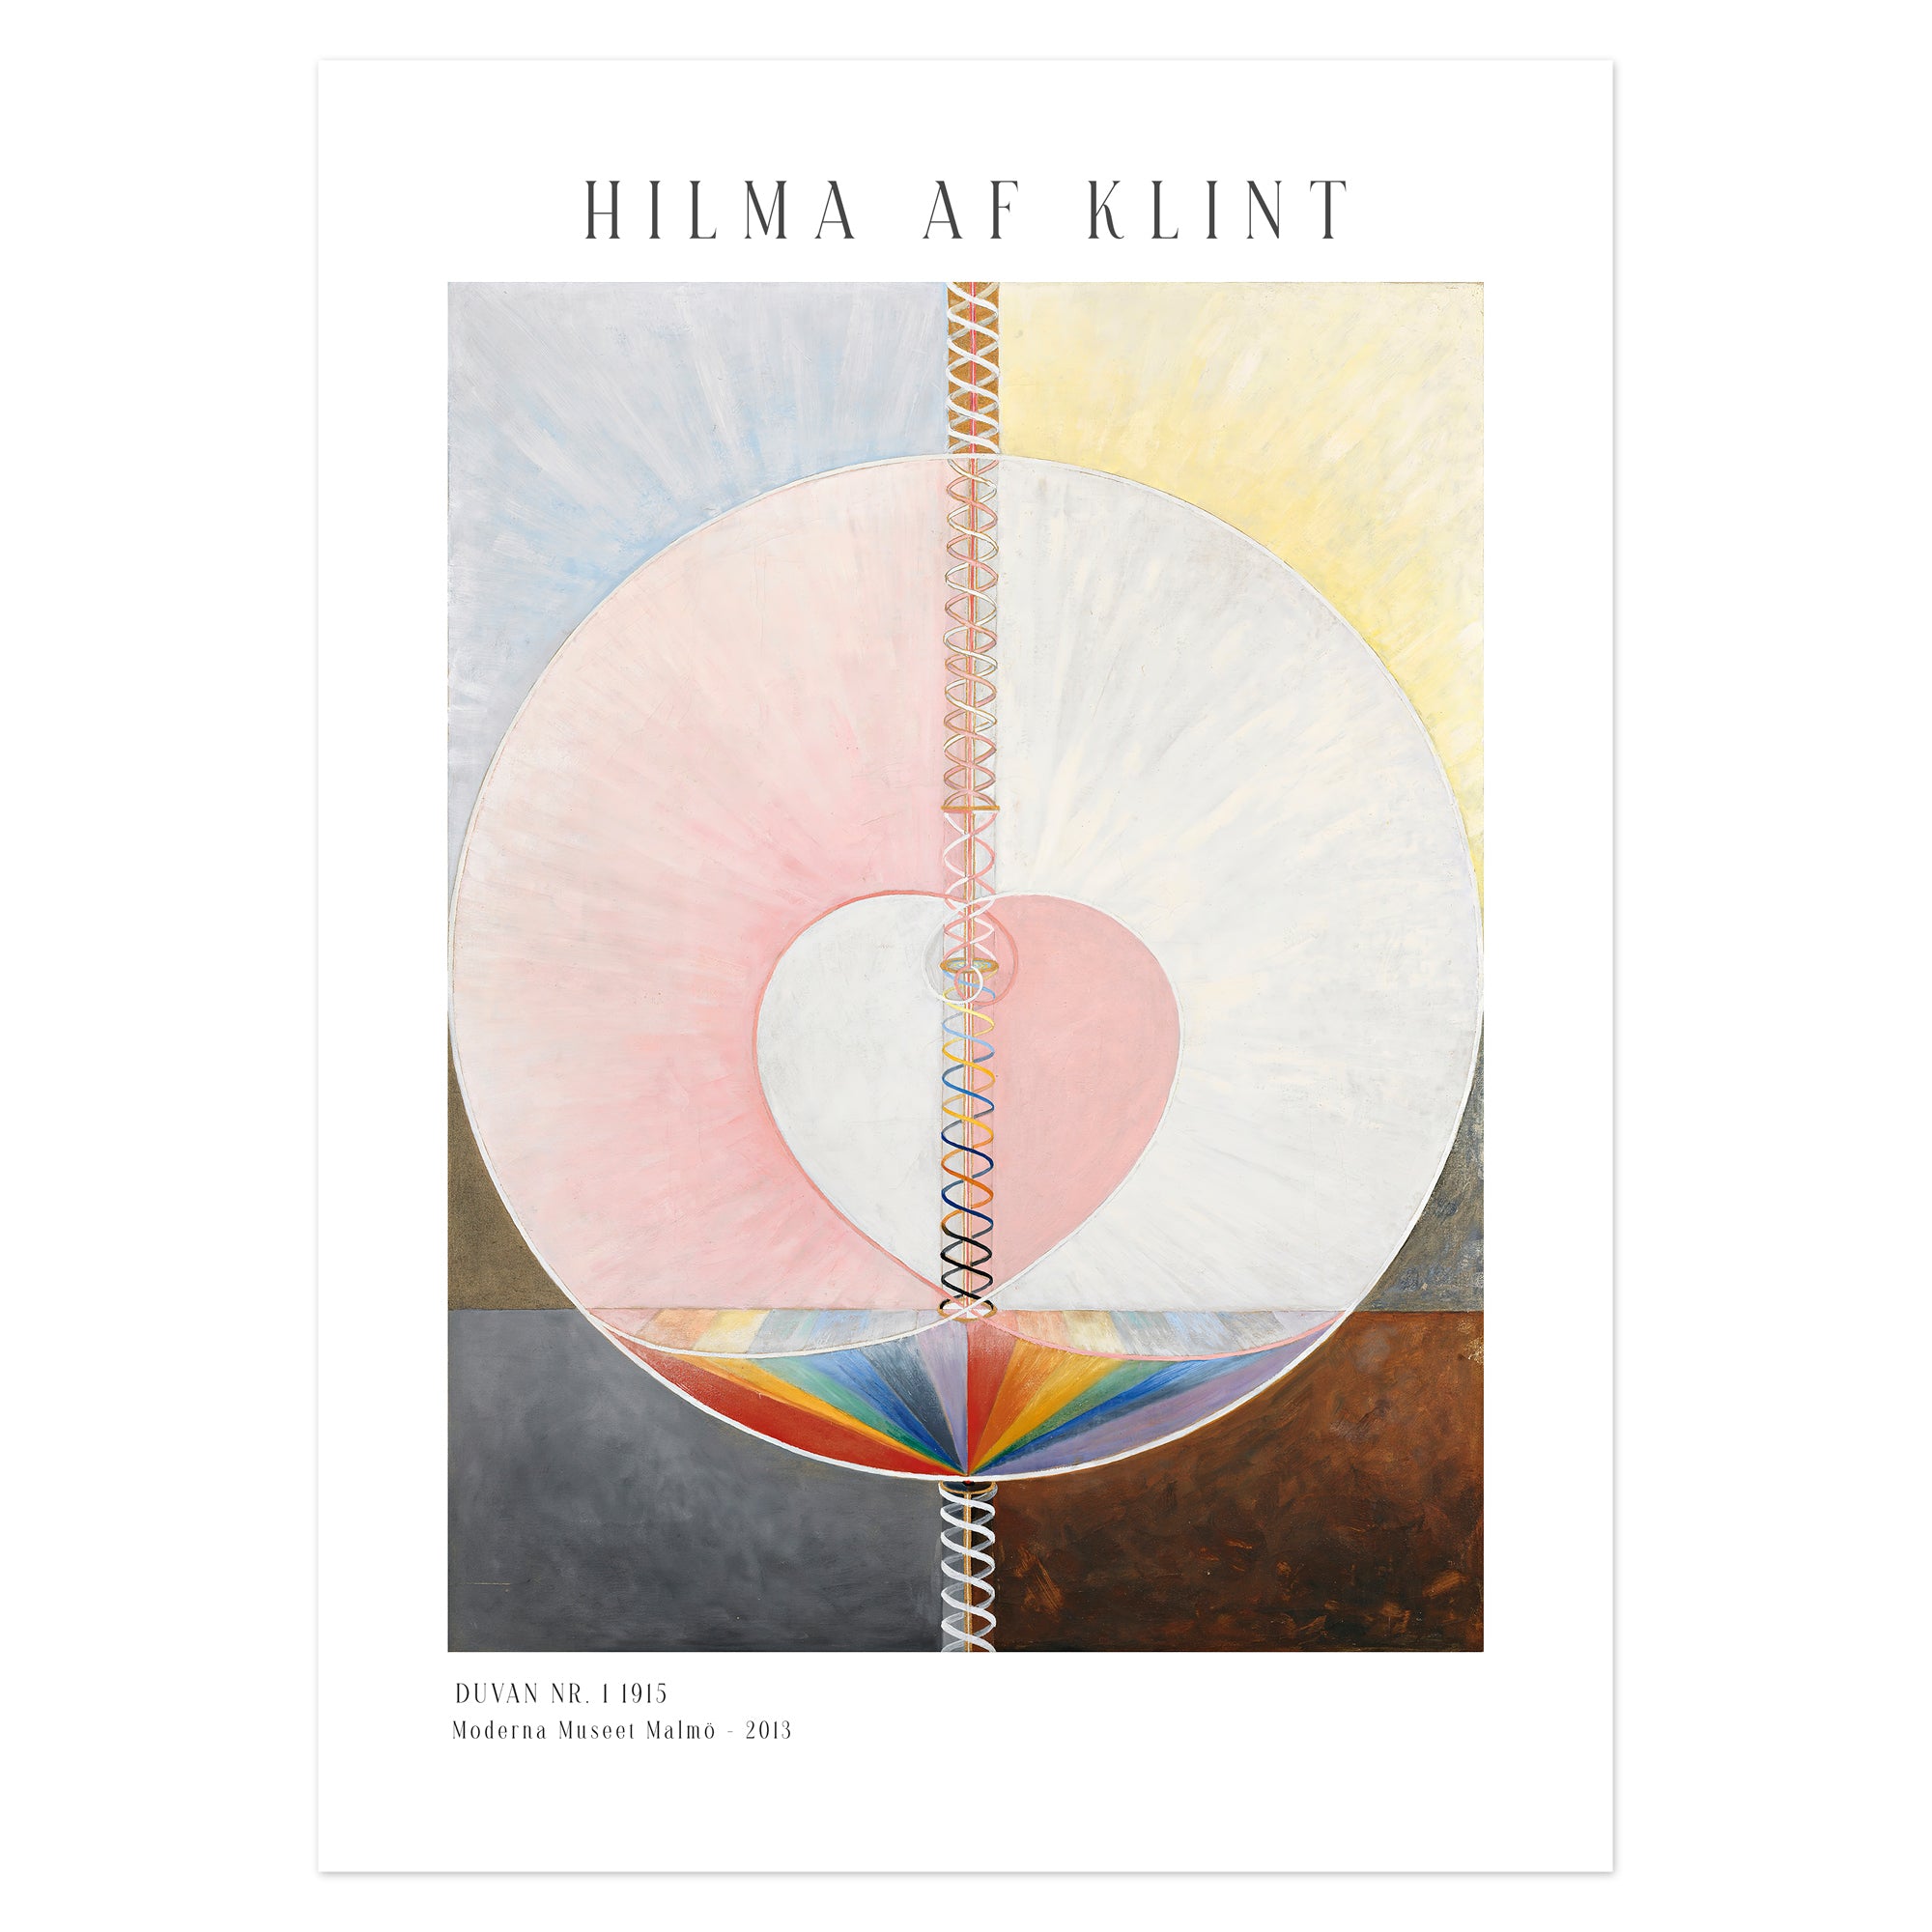 Hilma af Klint Poster - Duvan nr. 1